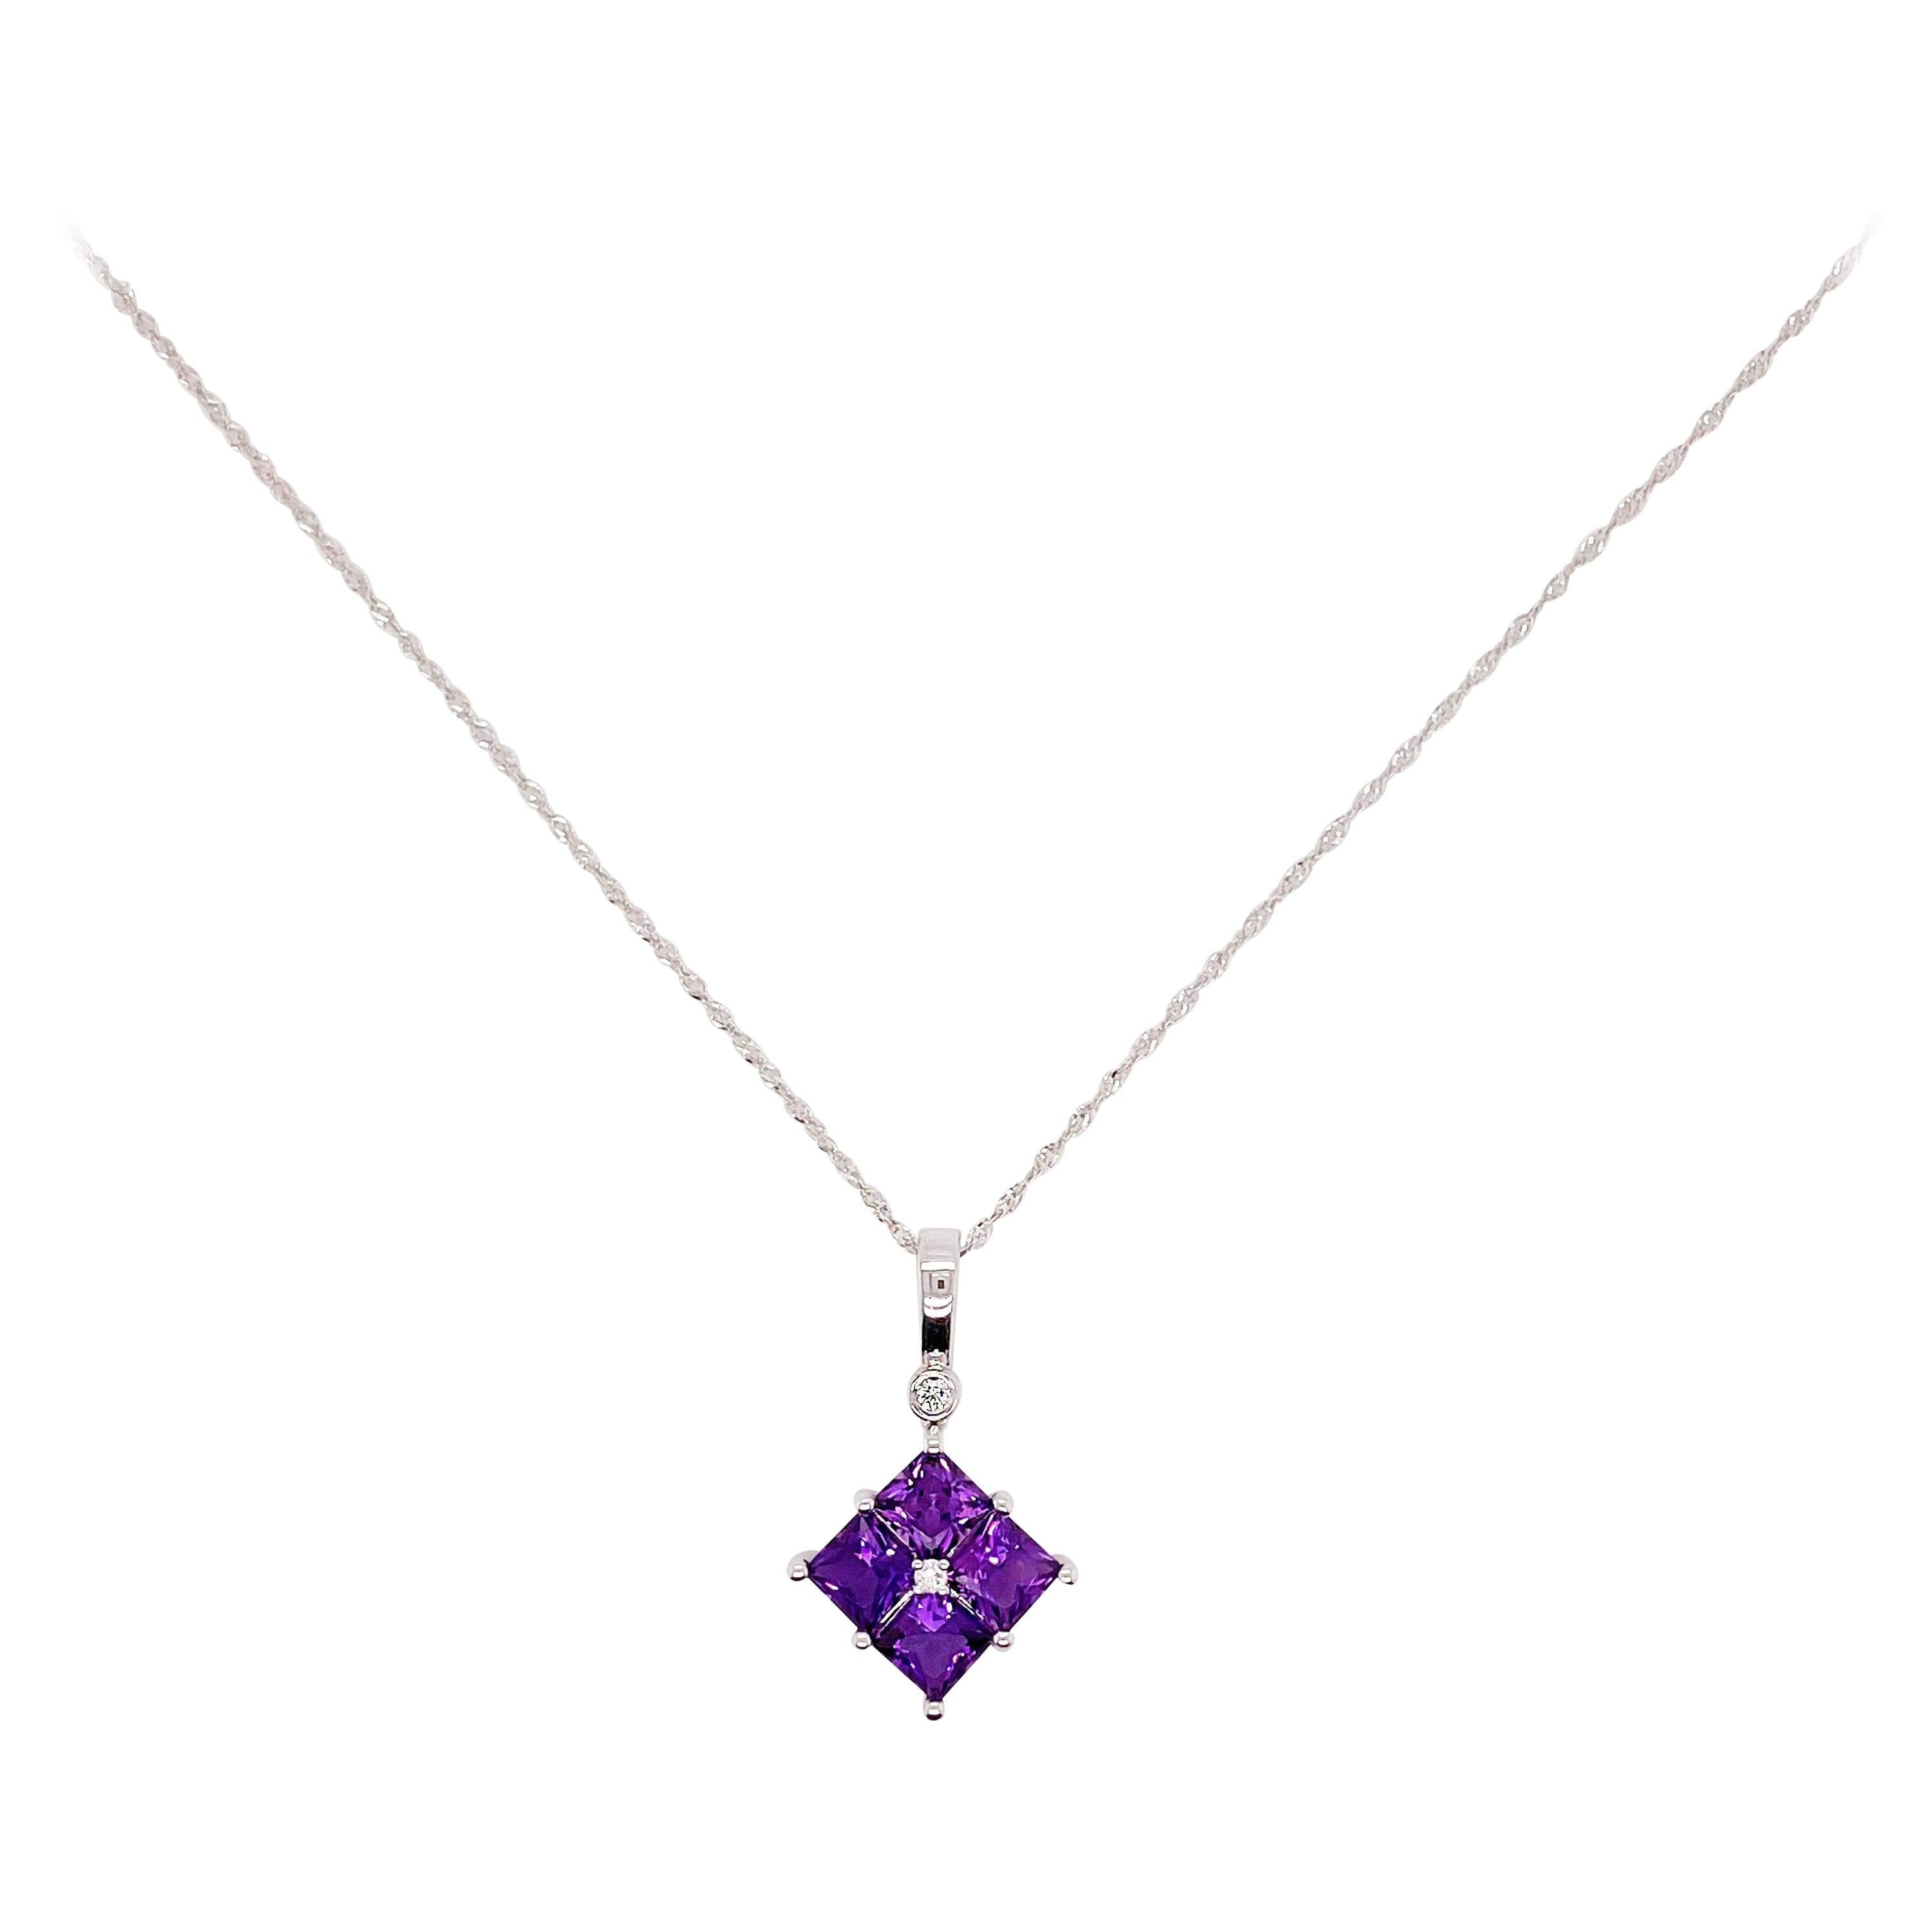 Collier pendentif en améthyste avec diamants, or blanc, pendentif carré en améthyste violette